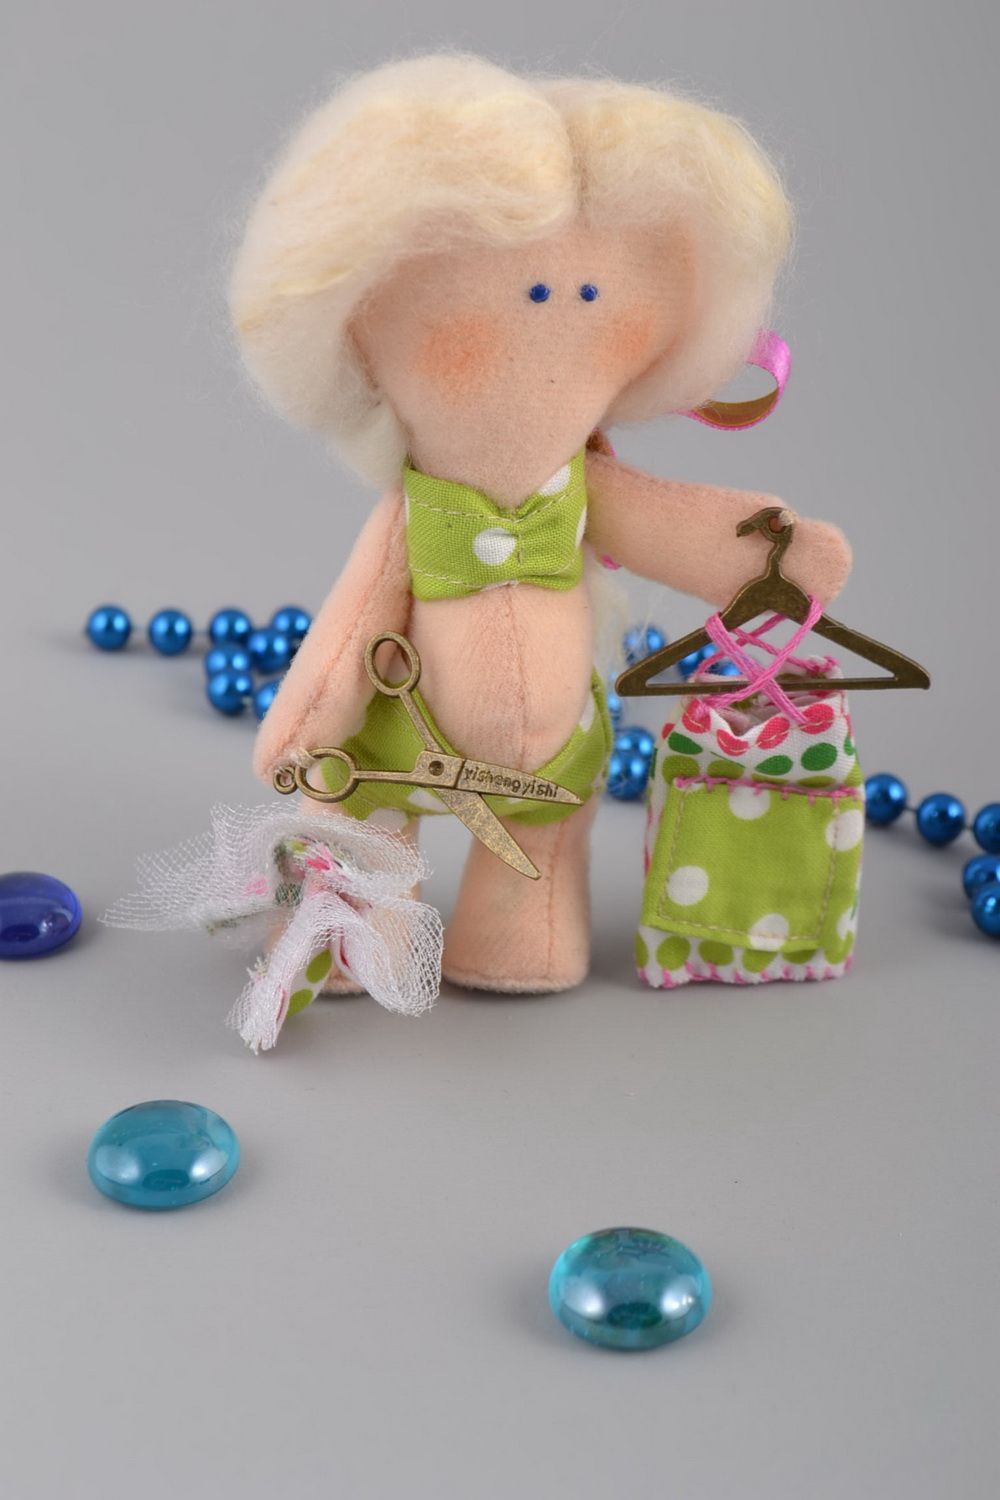 Кукла из фетра мягкая интерьерная игрушка ручной работы Девочка-дизайнер одежды фото 1